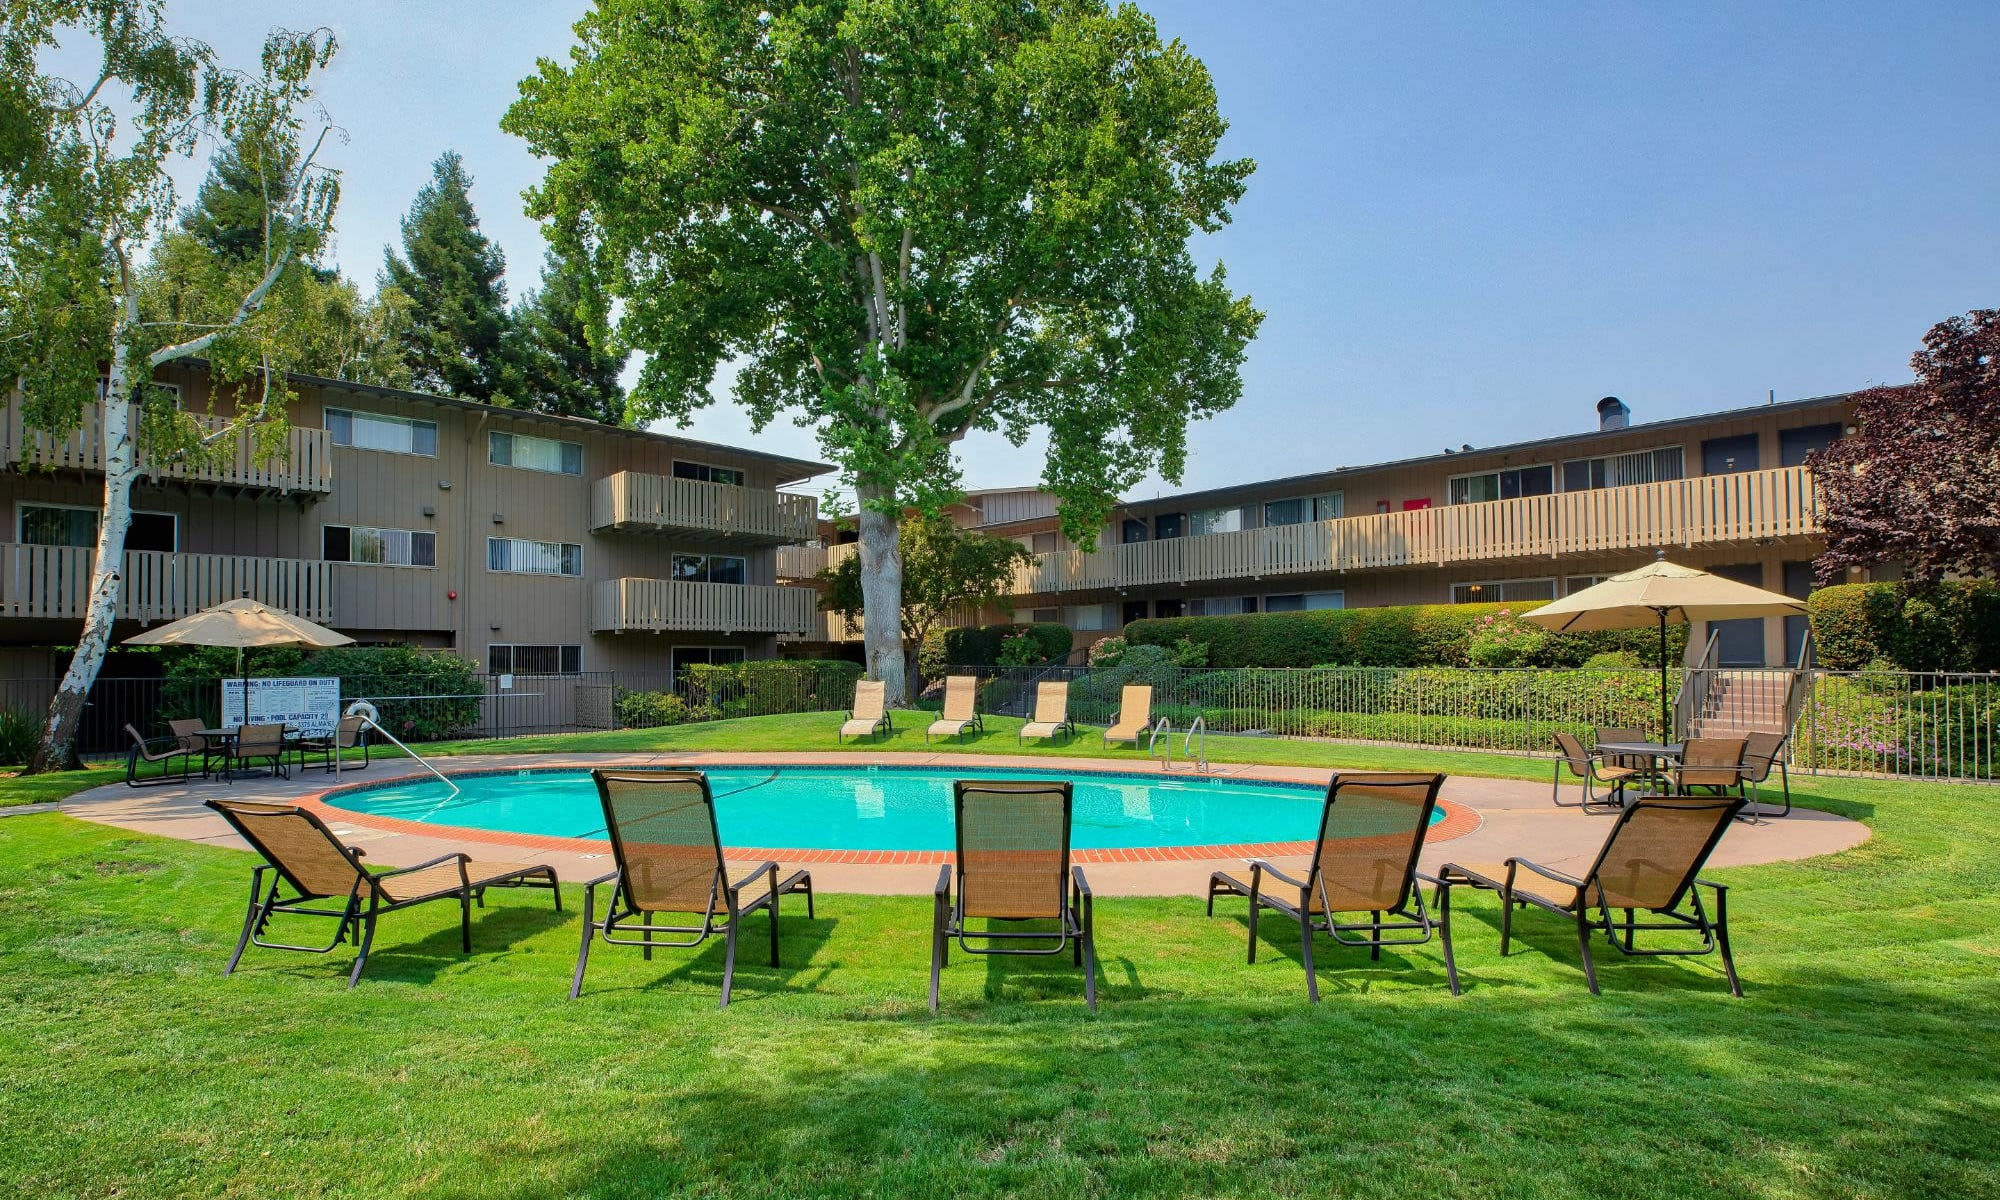 Pool area at Stanford Villa in Palo Alto, California